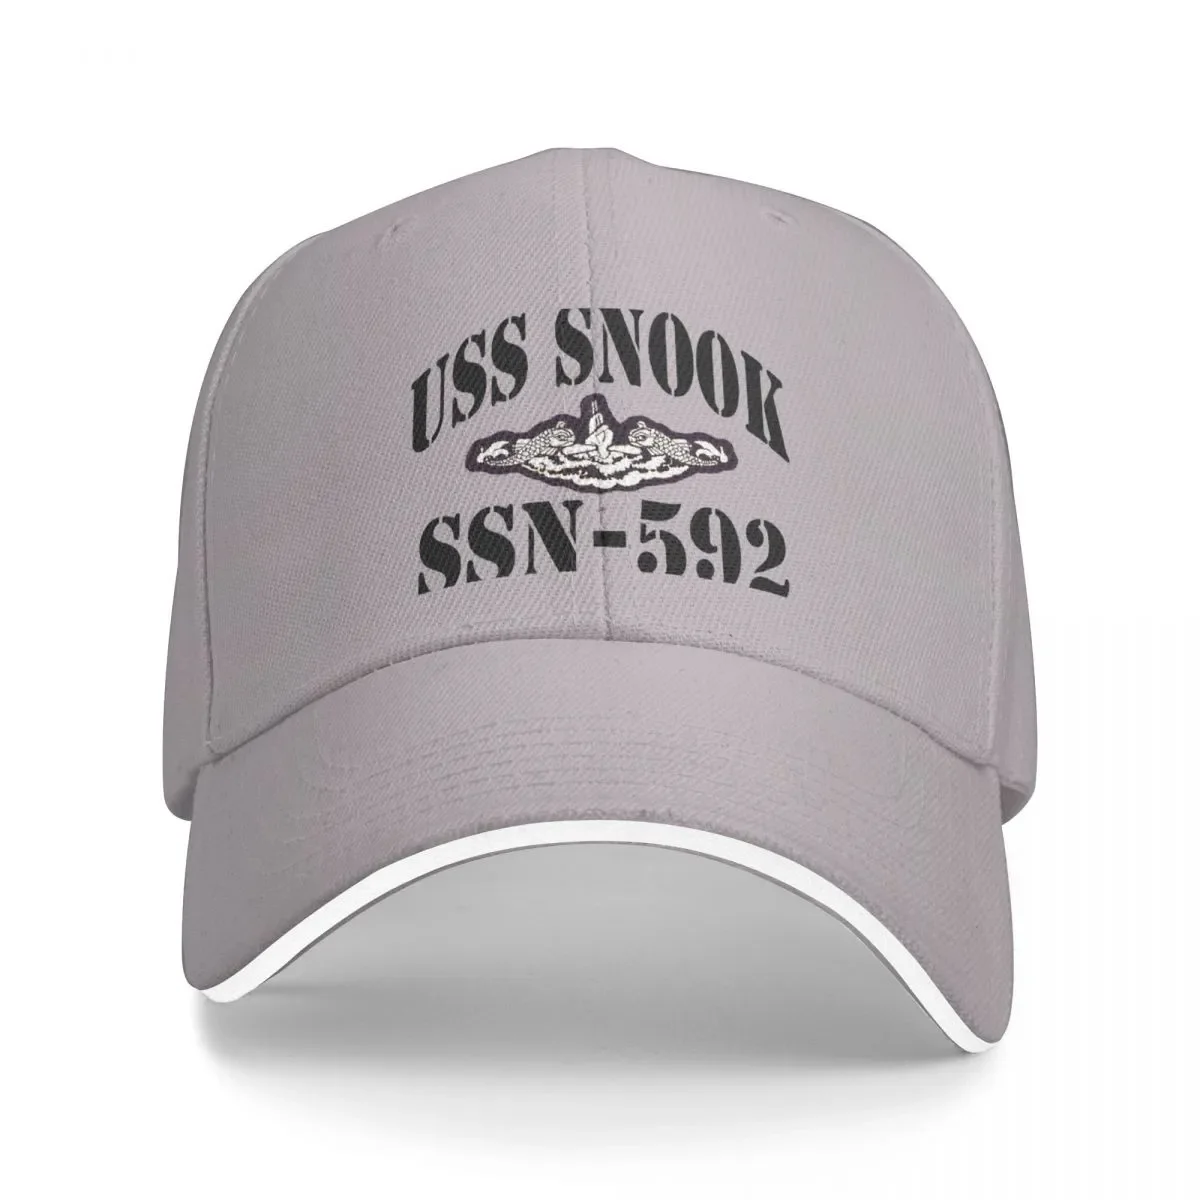 

New USS SNOOK (SSN-592) SHIP'S STORE Cap Baseball Cap sun hat Big size hat beach Cap women's Men's